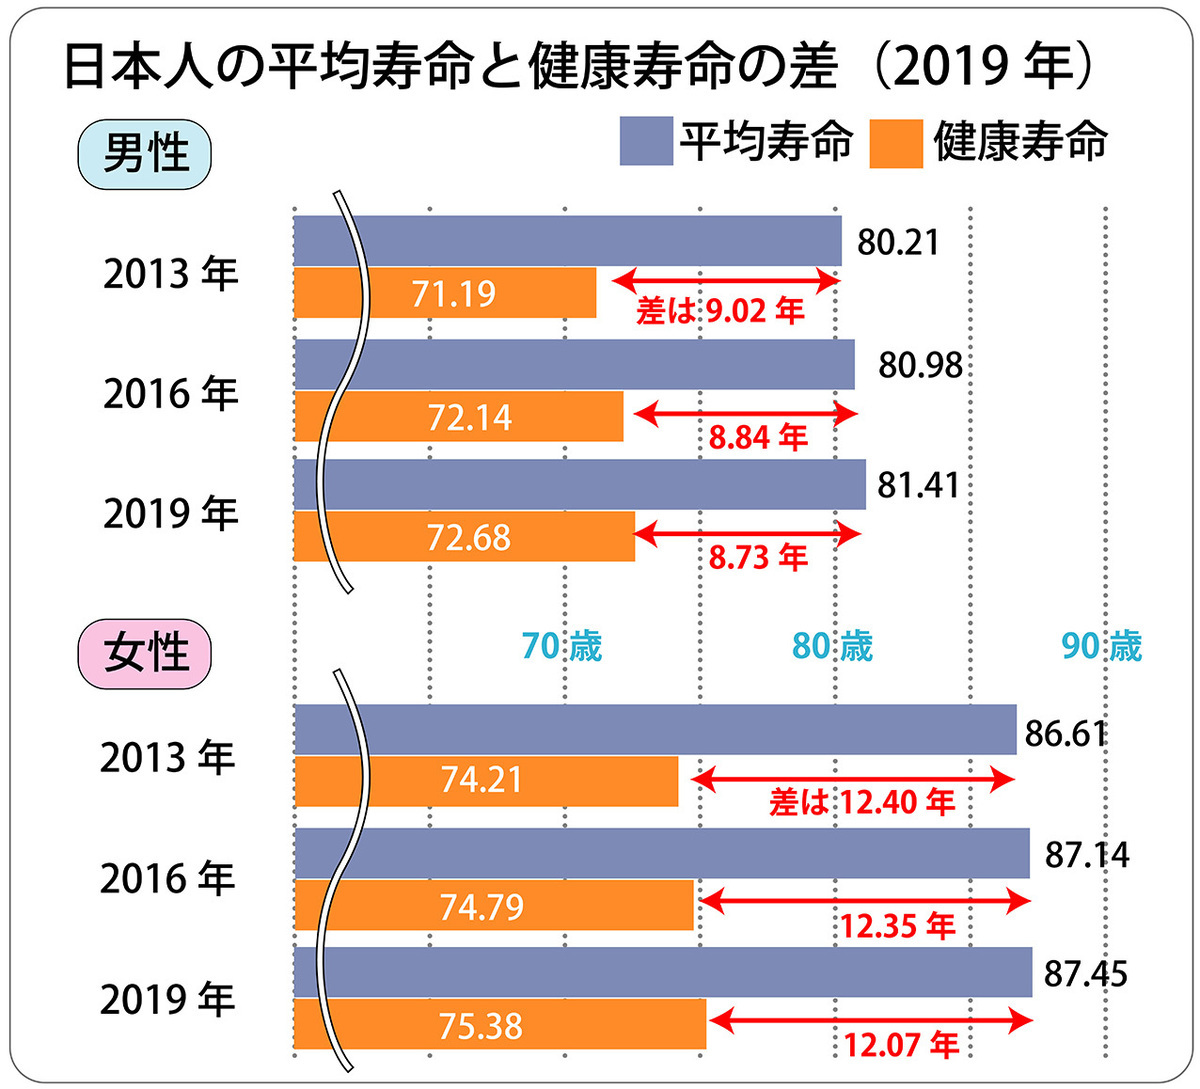 日本人の平均寿命と健康寿命。厚生労働省は2021年12月、2019年の「健康寿命」を公表しています。健康寿命は３年ごとに算出され、今回は４回目です。